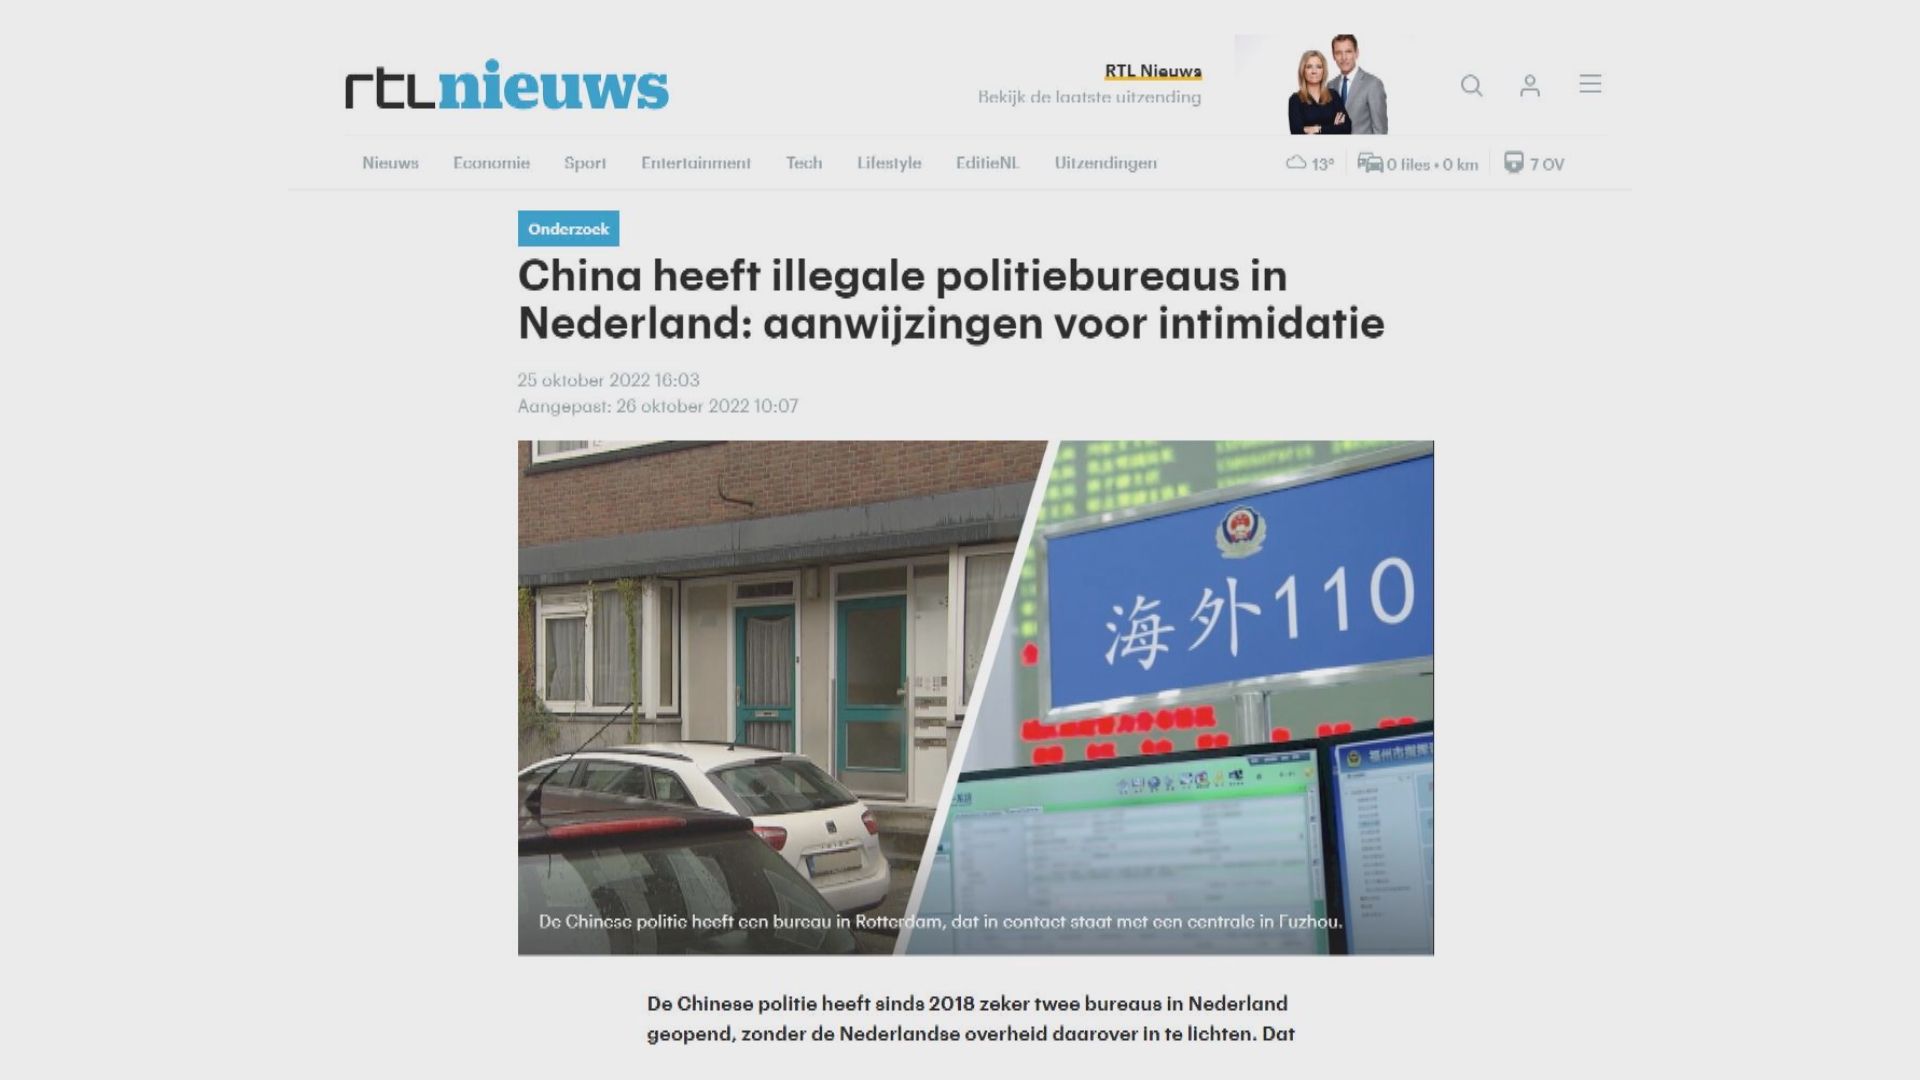 報道指中國於荷蘭設「警察站」打壓異見人士　中方指是「涉僑事務海外服務站」